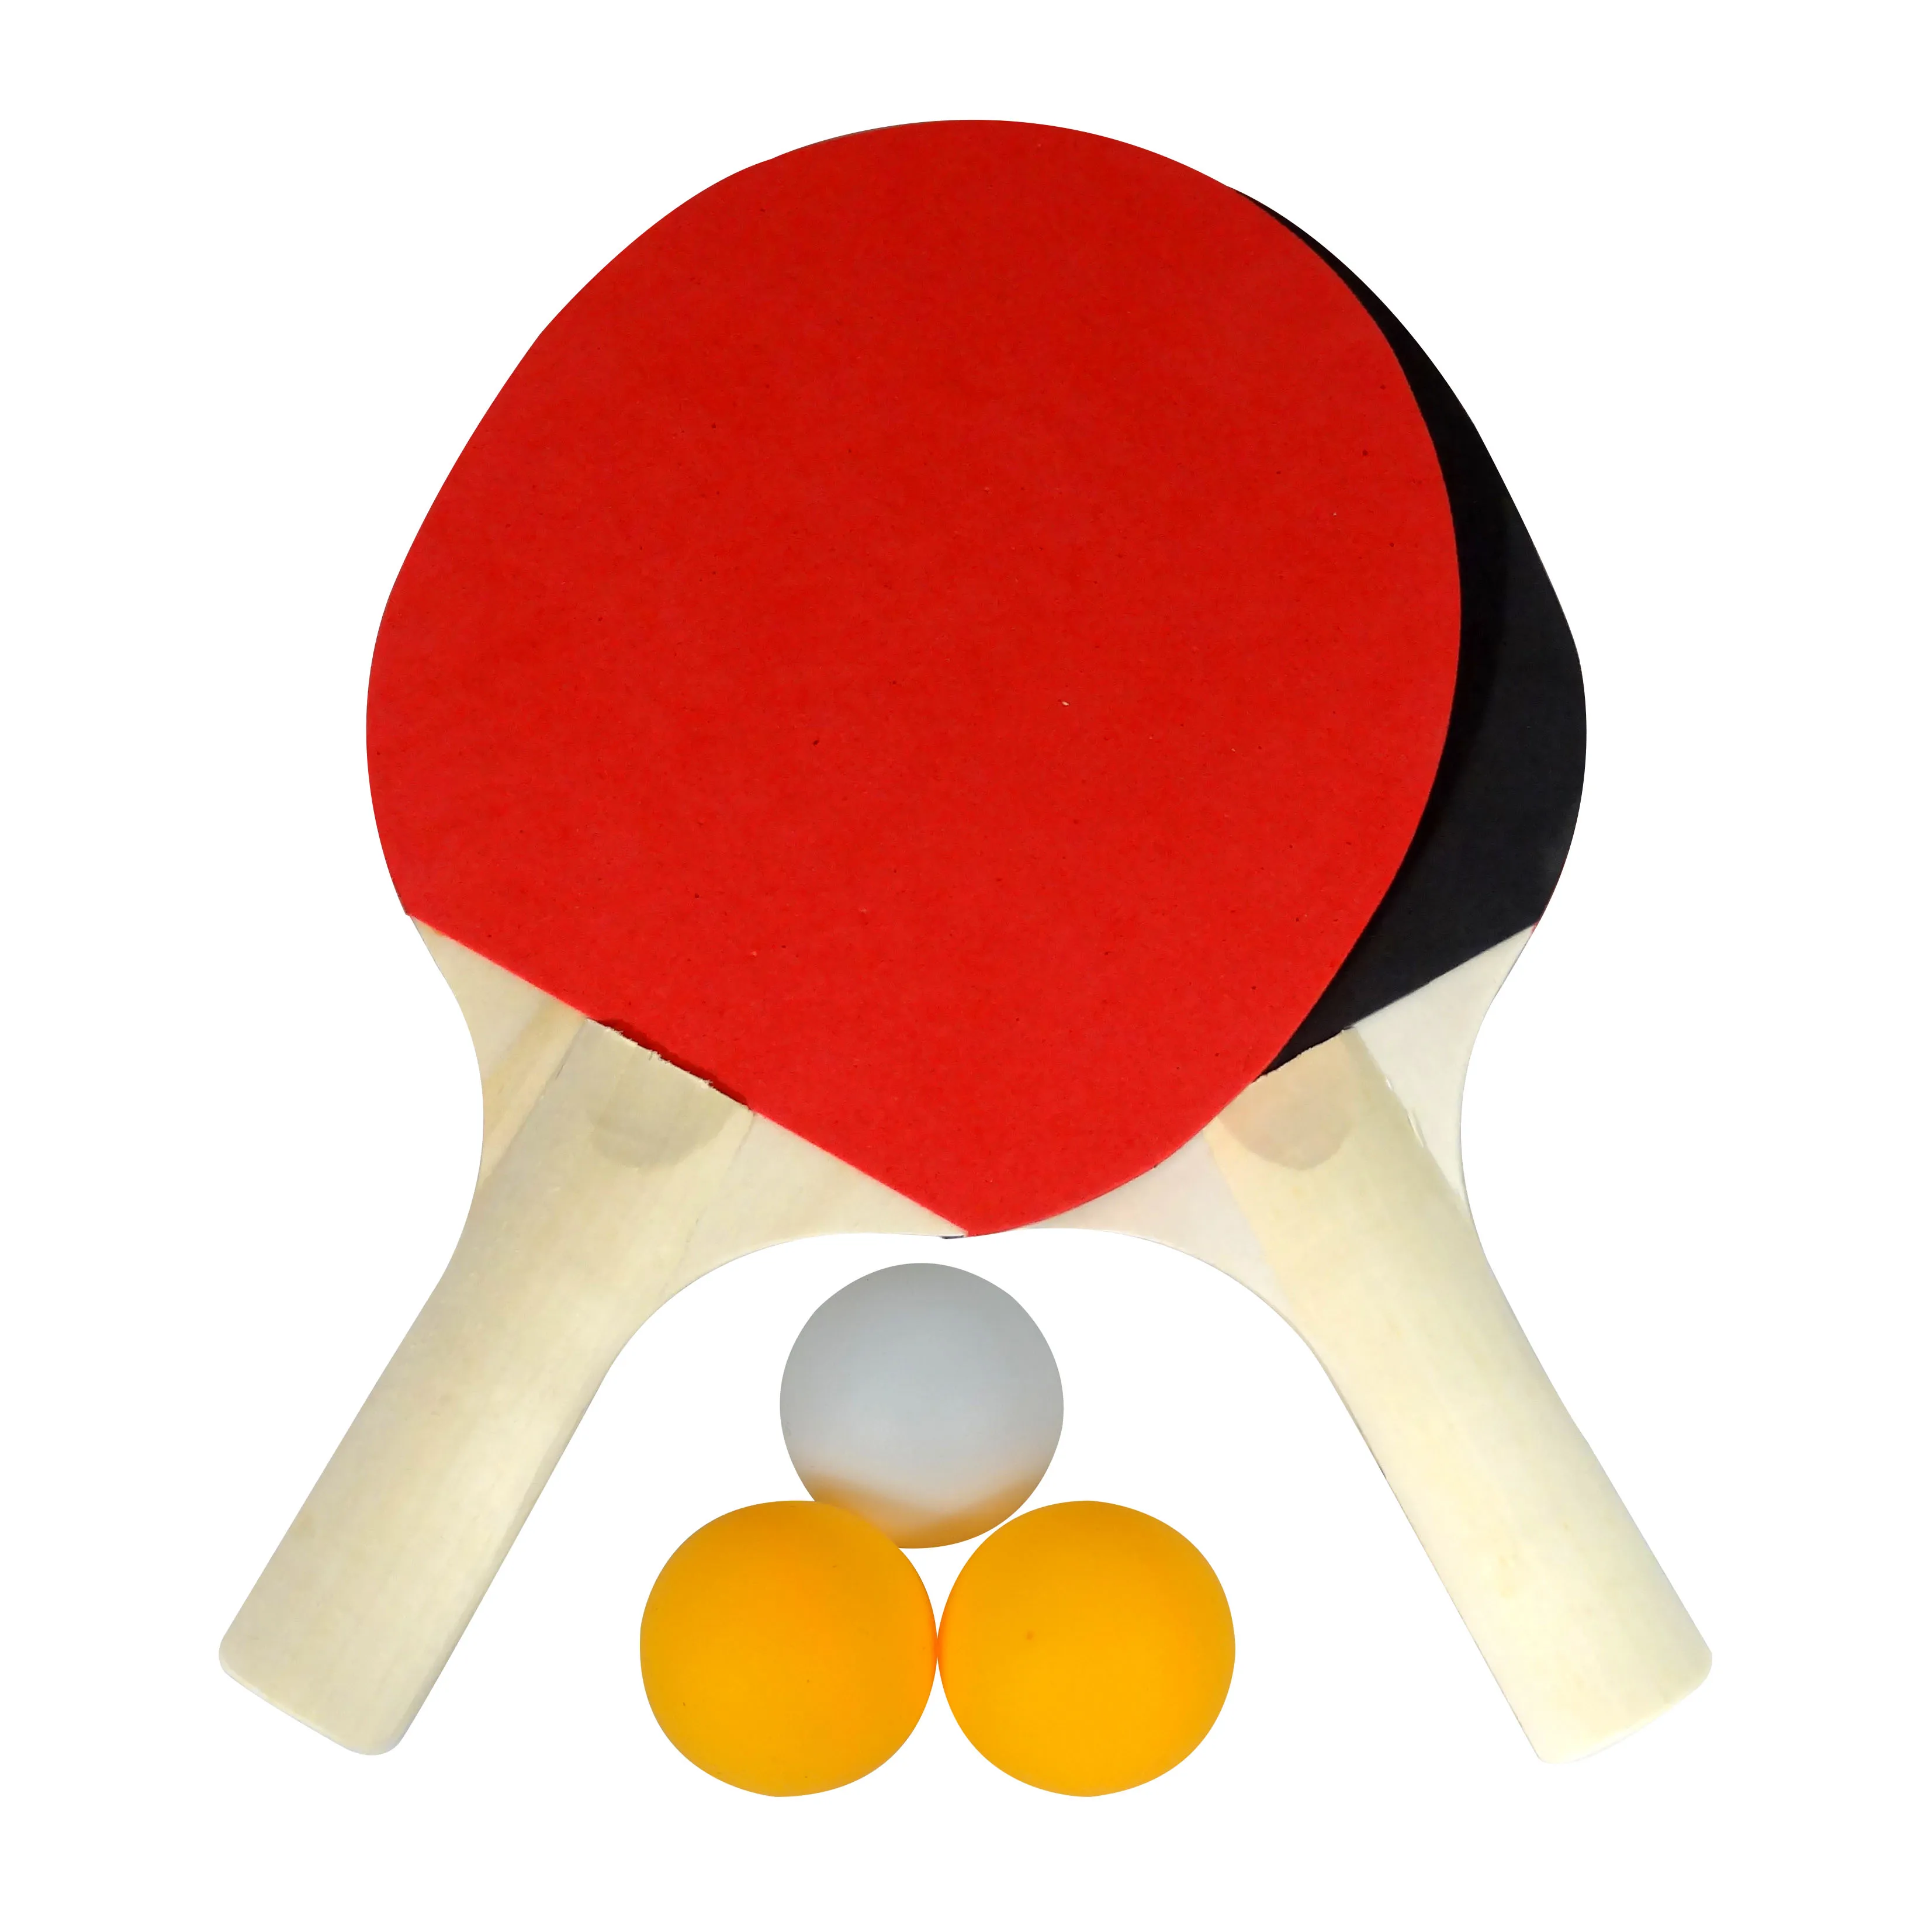 Комплект ракеток для тенниса